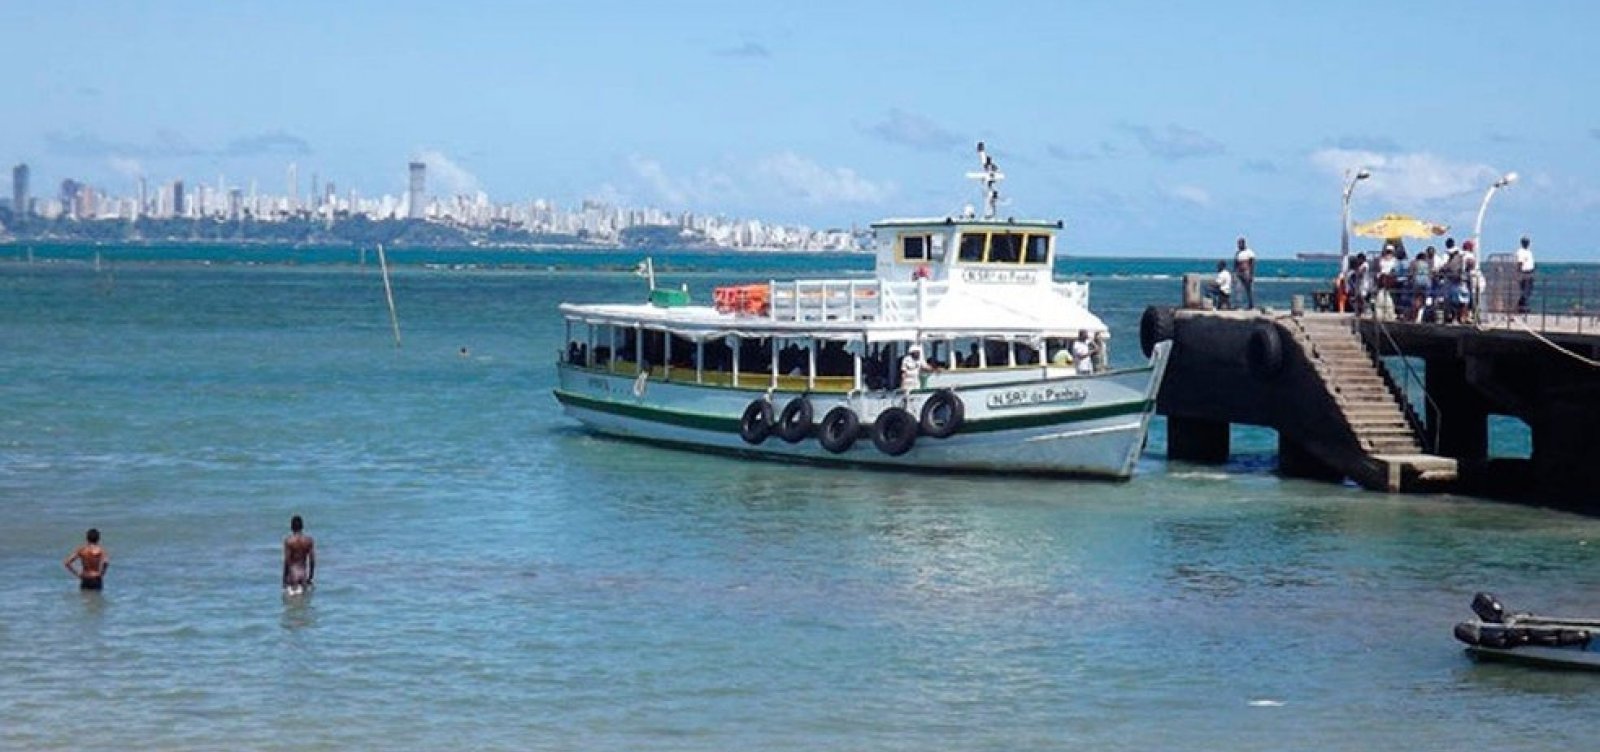 Travessia Salvador-Mar Grande é interrompida por 2h em razão de maré baixa